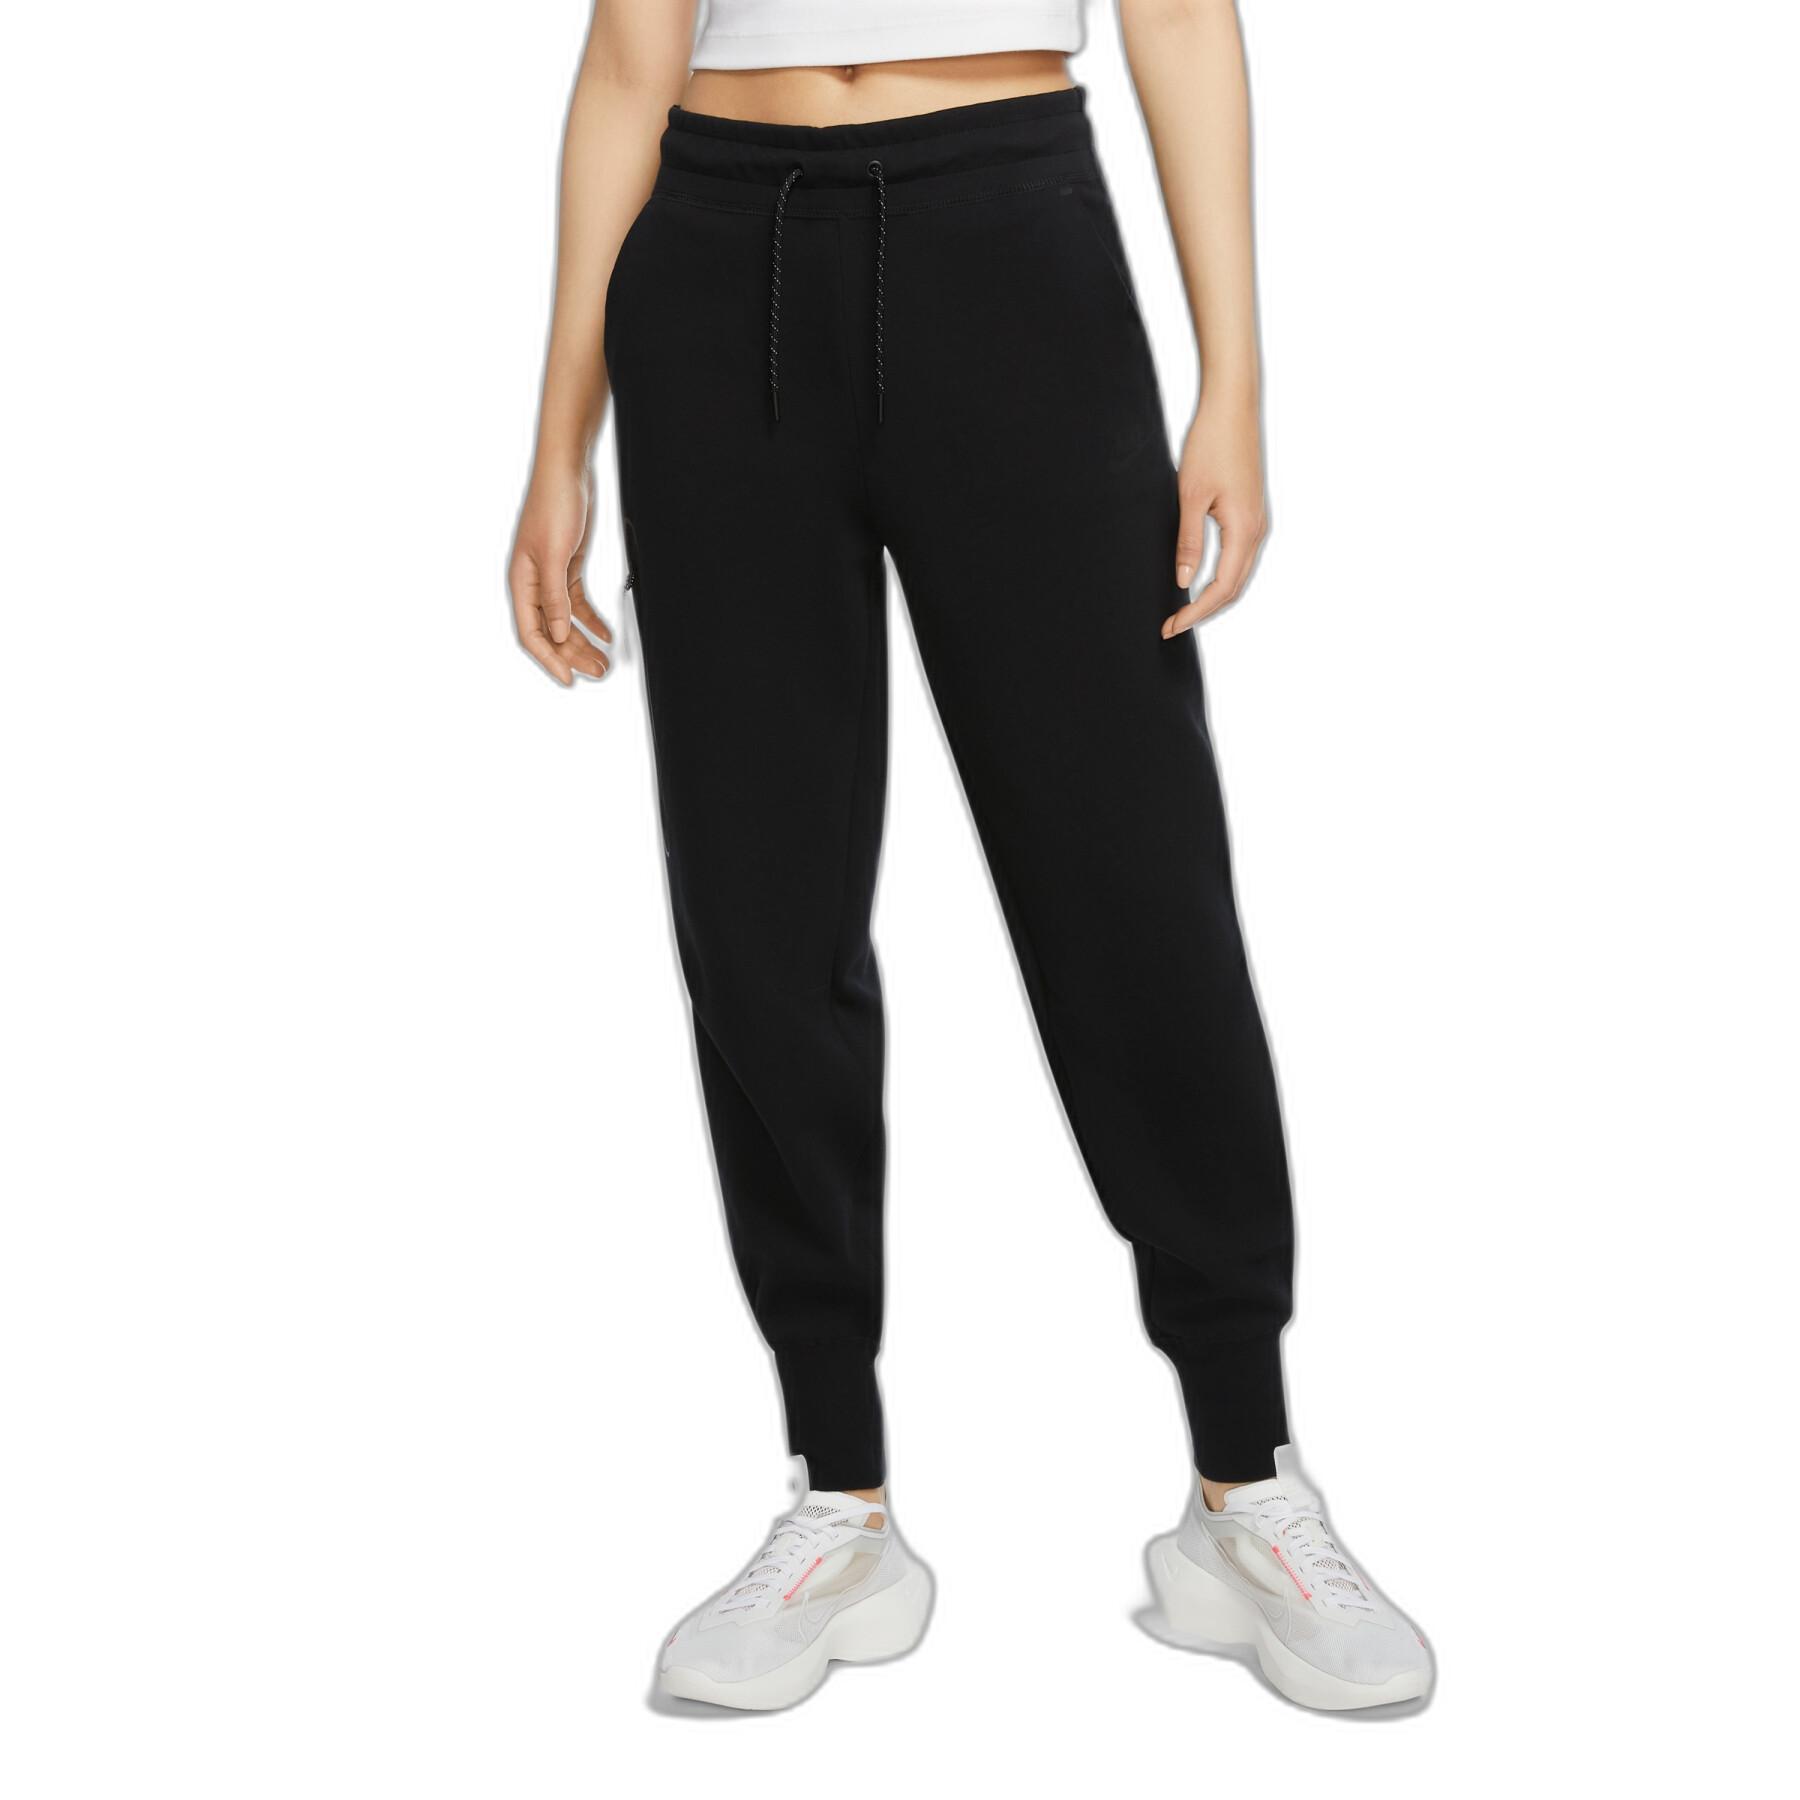 Pantalón de jogging para mujeres Nike Sportswear Tech Fleece